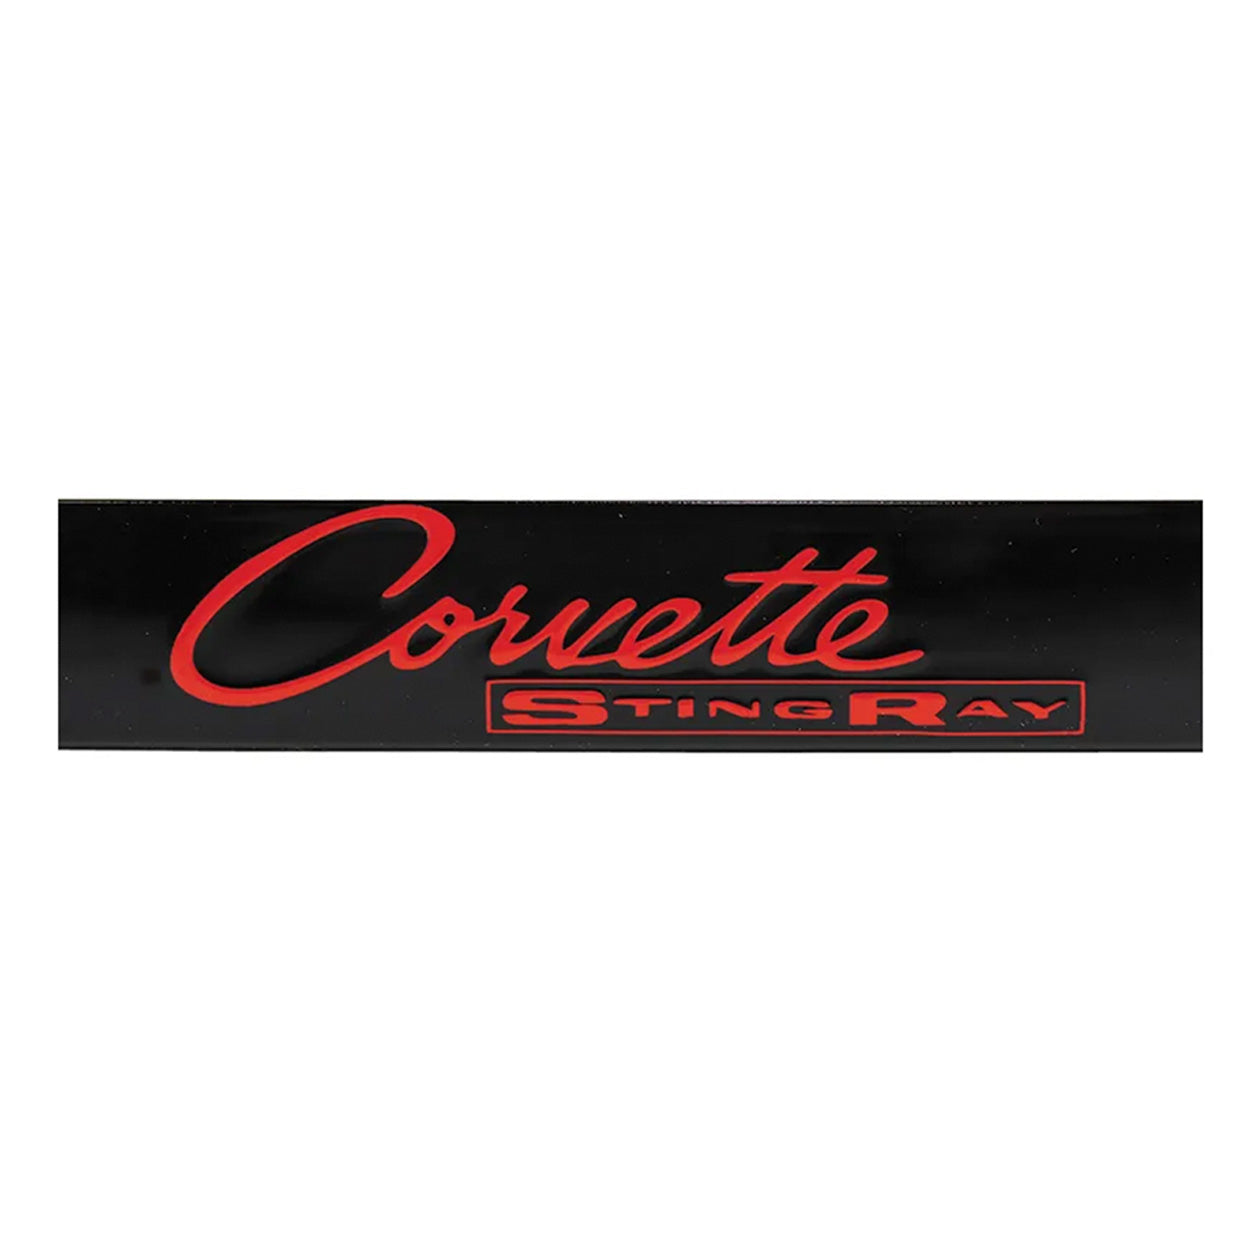 C2 Corvette License Plate Frame - Corvette Sting Ray Script